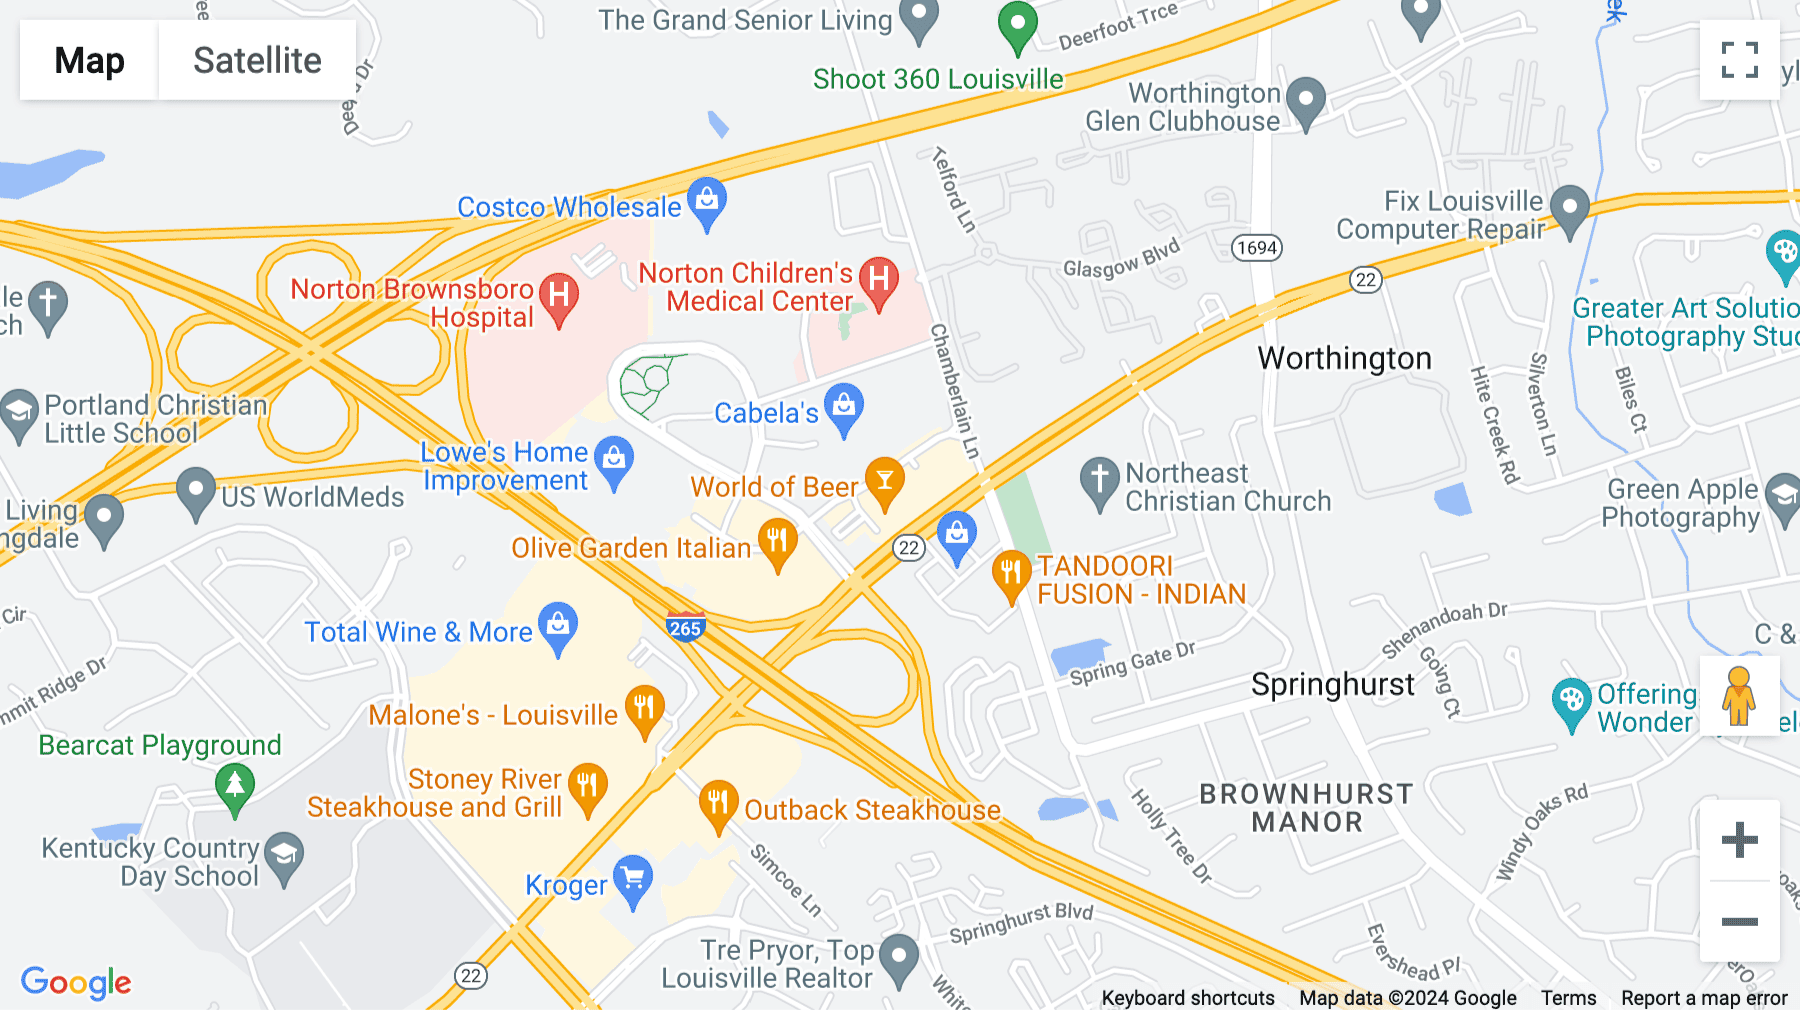 Click for interative map of Brownsboro Crossing, 9850 Von Allmen Court, Suite 201, Louisville